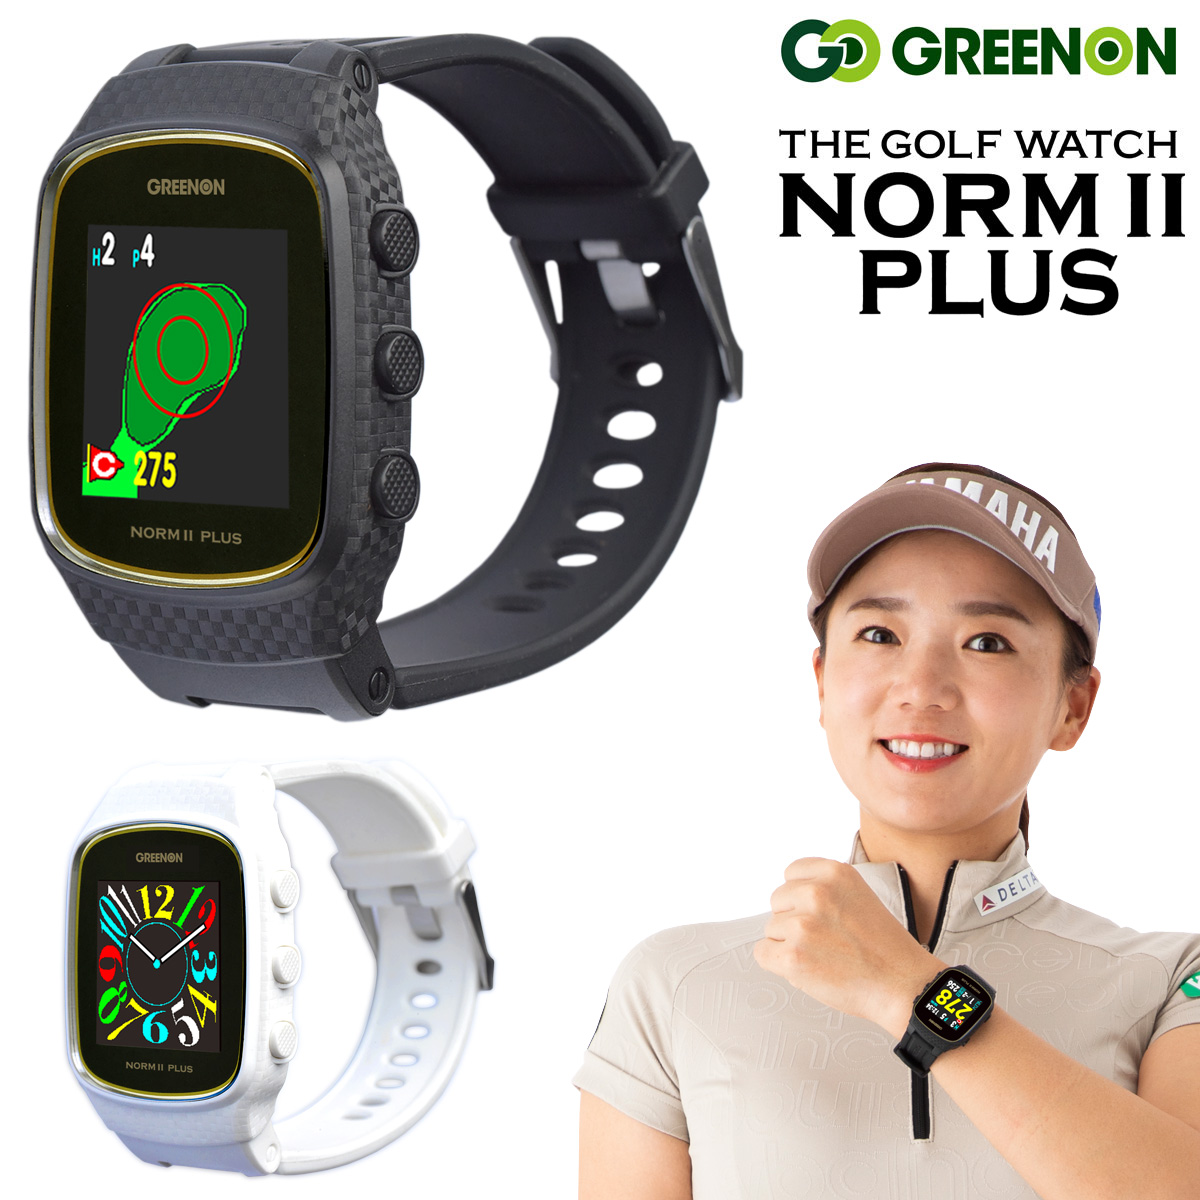 GreenOn グリーンオン日本正規品 THE GOLF WATCH NORM II PLUS (ザ・ゴルフウォッチノルム2プラス) 「 みちびきL1S対応GPS距離測定器 」 